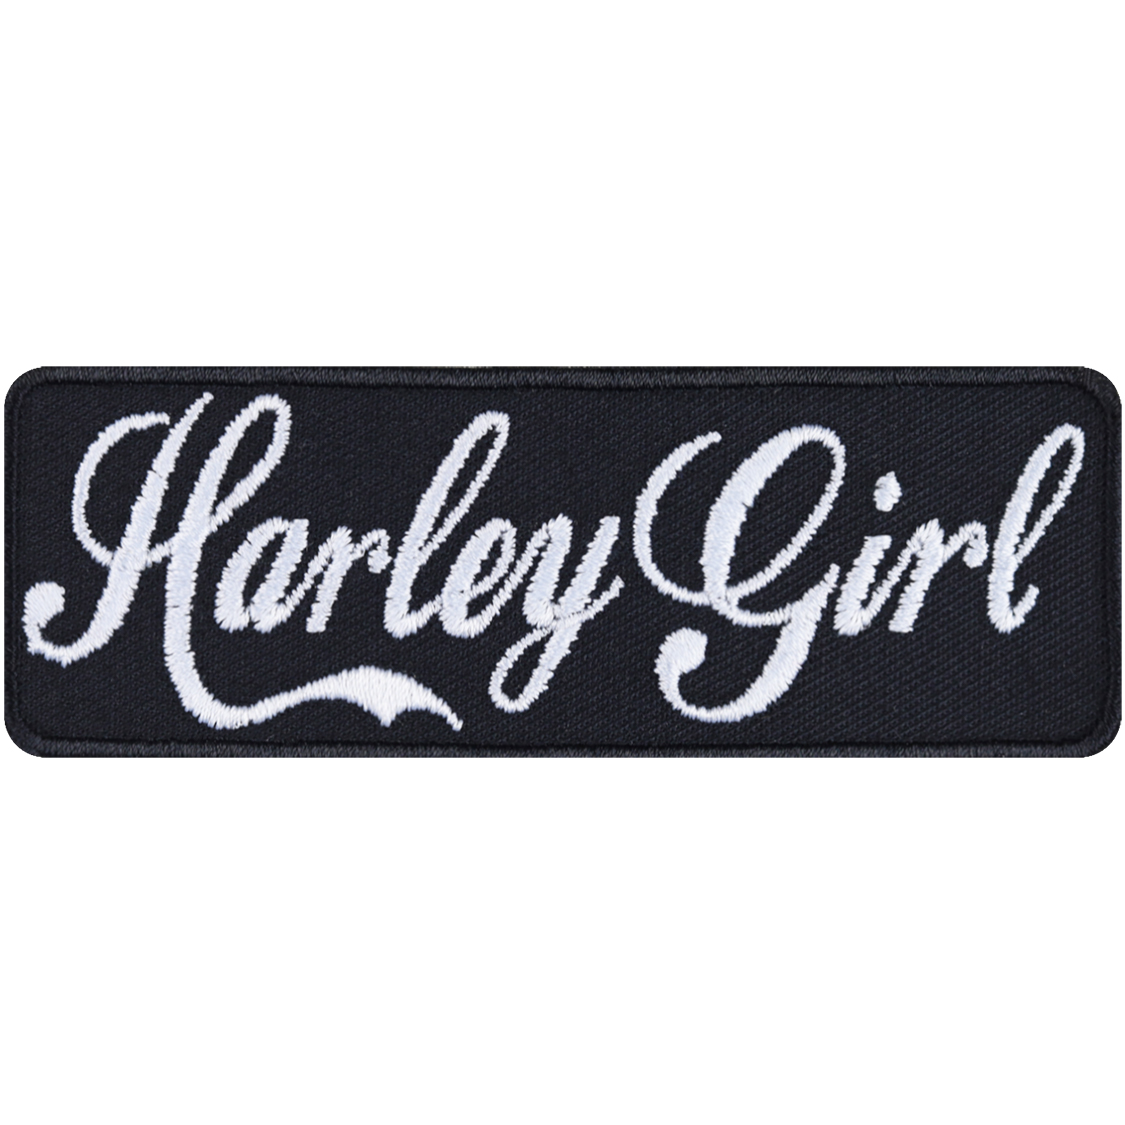 Harley girl - Patch